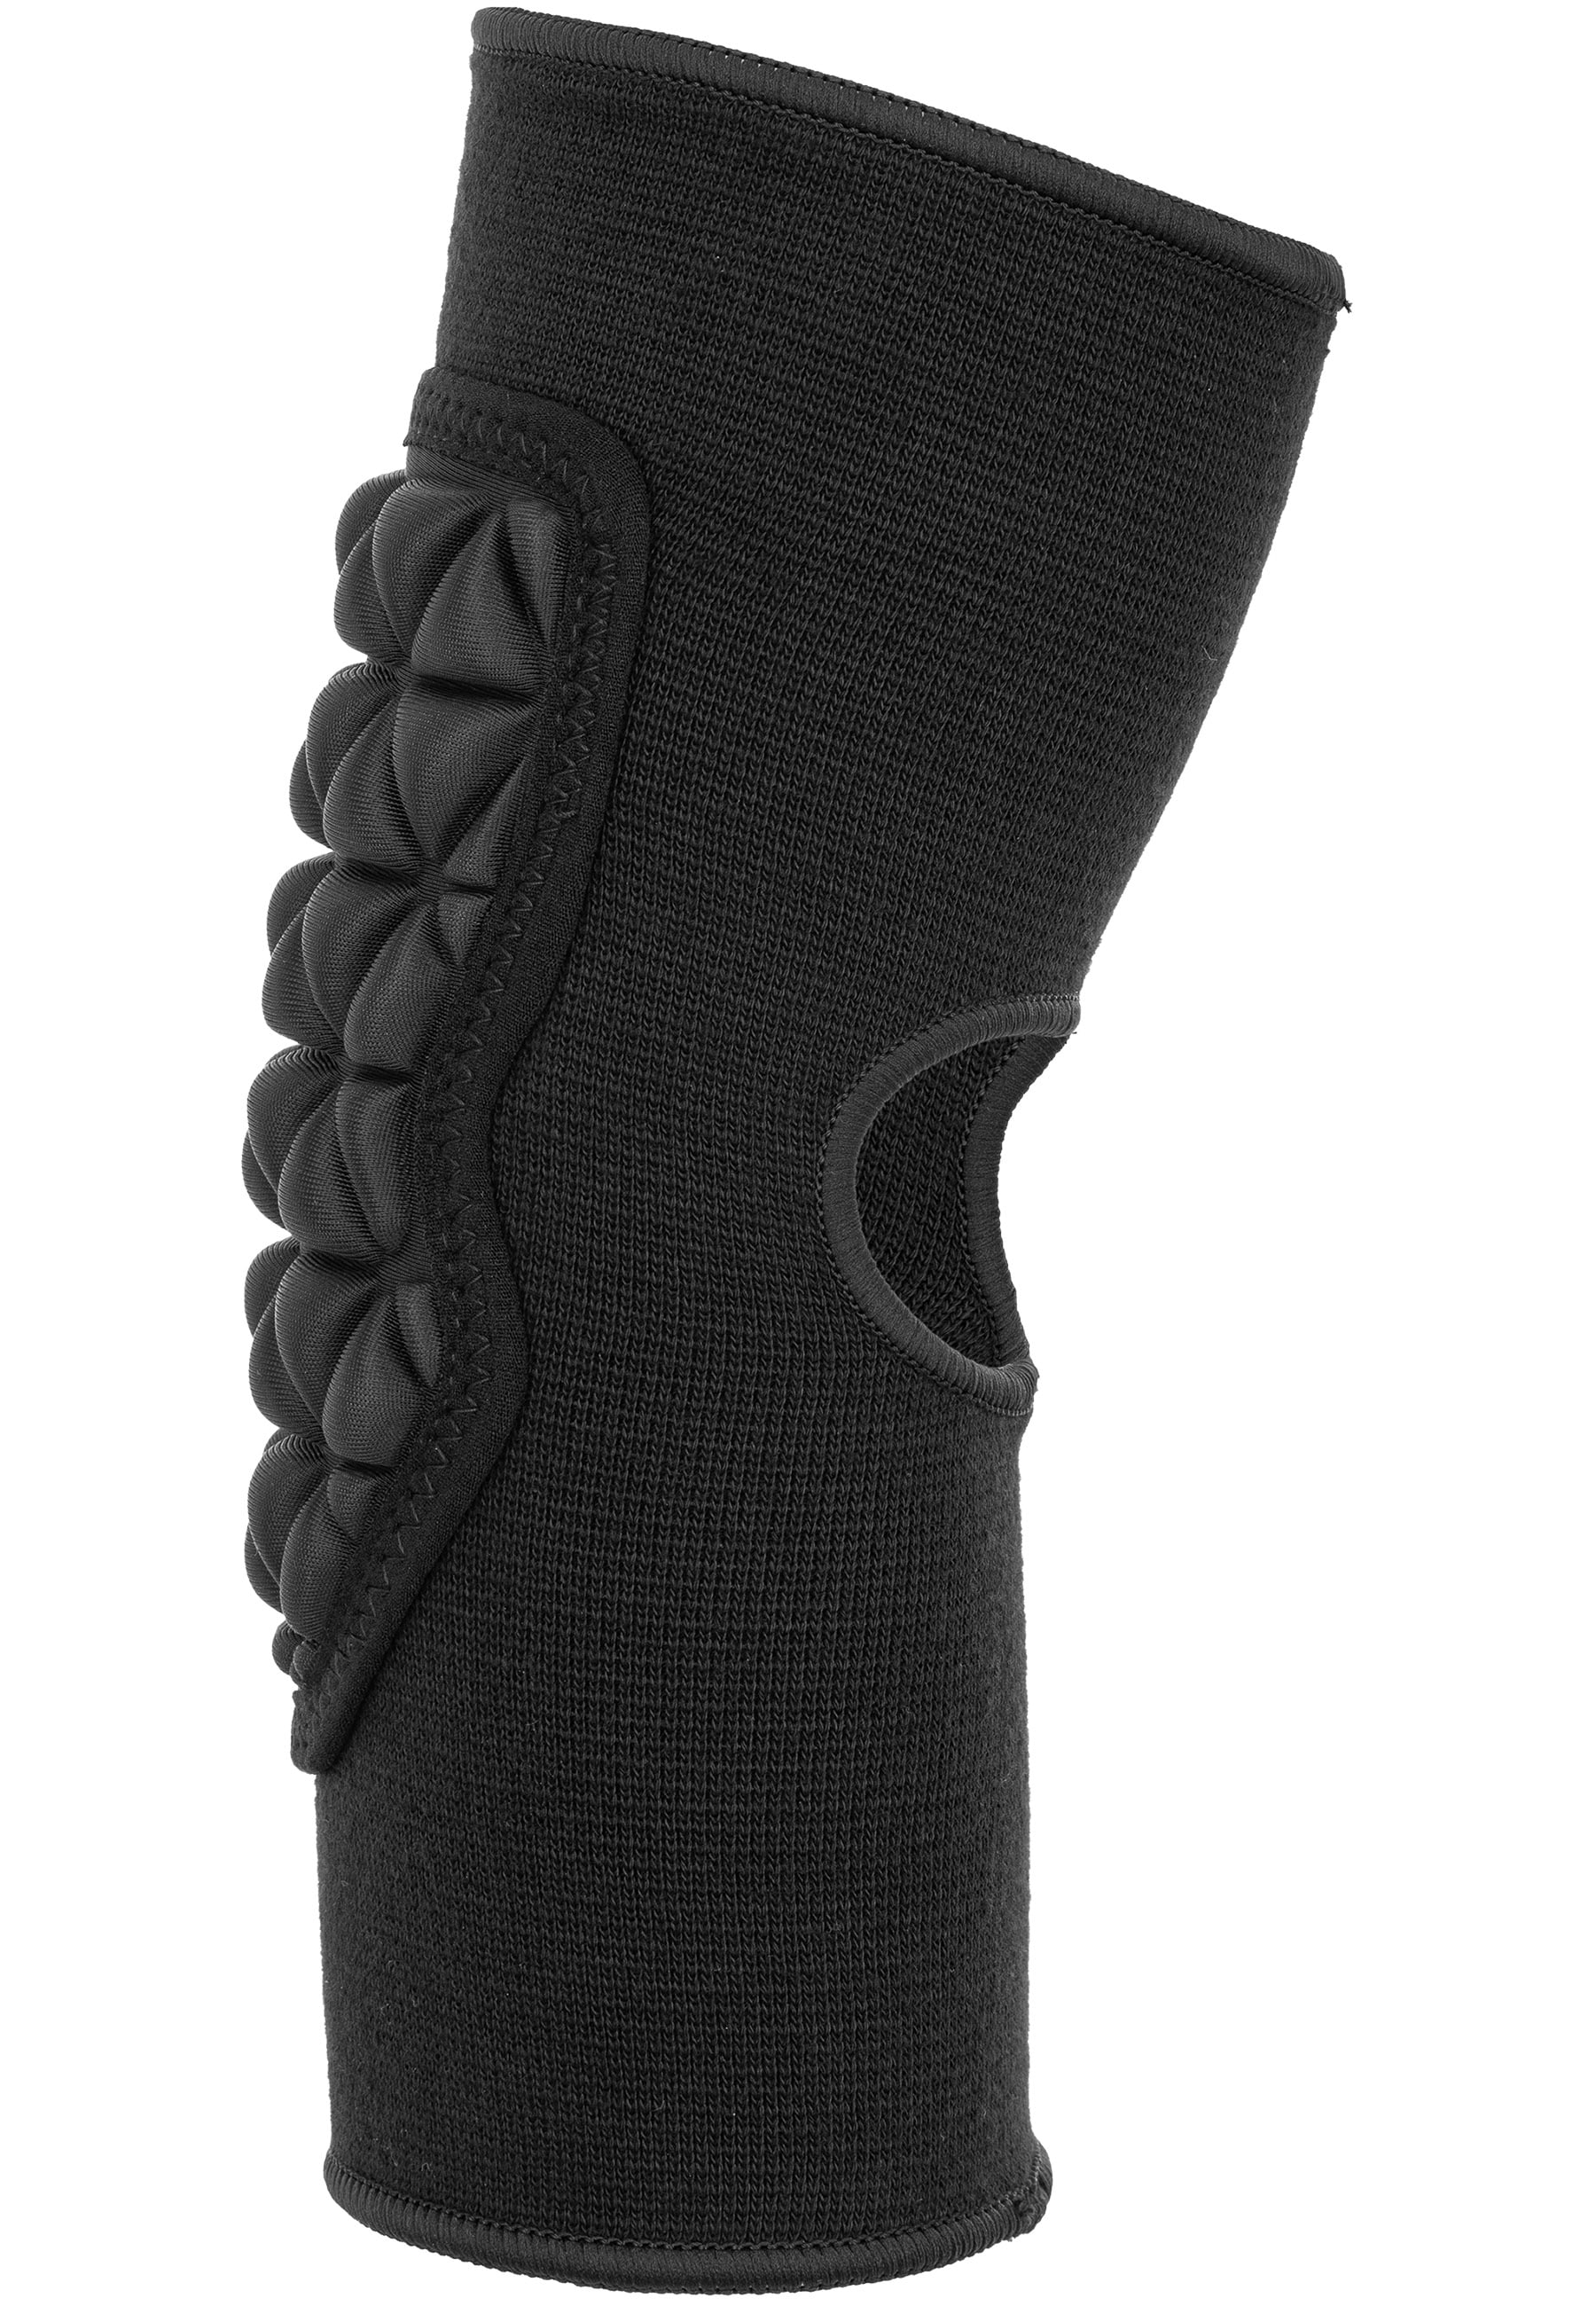 Reusch Knieprotektor »Elbow Protector Deluxe«, mit ergonomischer Form